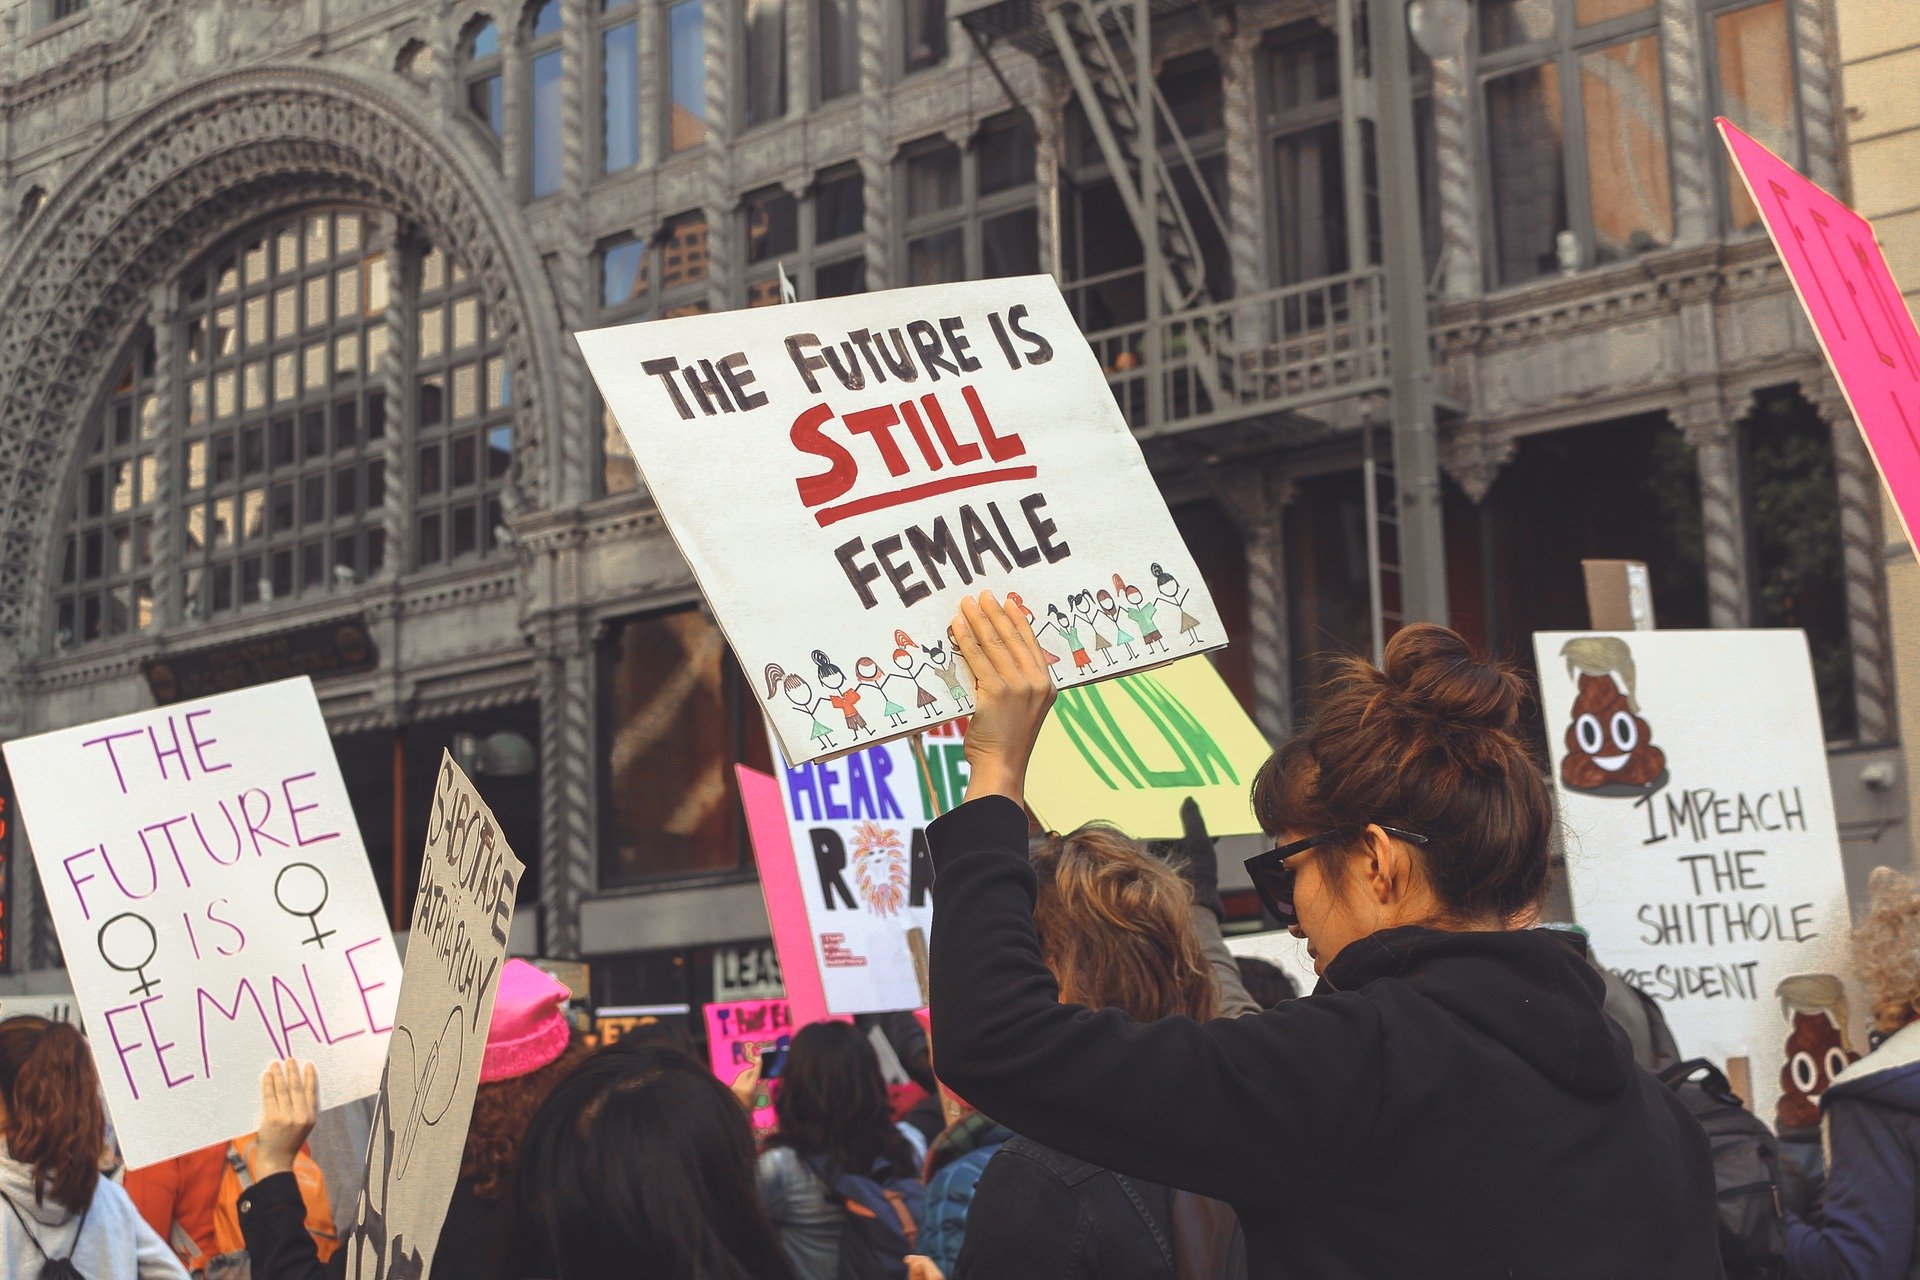 Photographie d'une manifestation féministe aux Etats-Unis en mars 2018. Image par miawicks9 de Pixabay